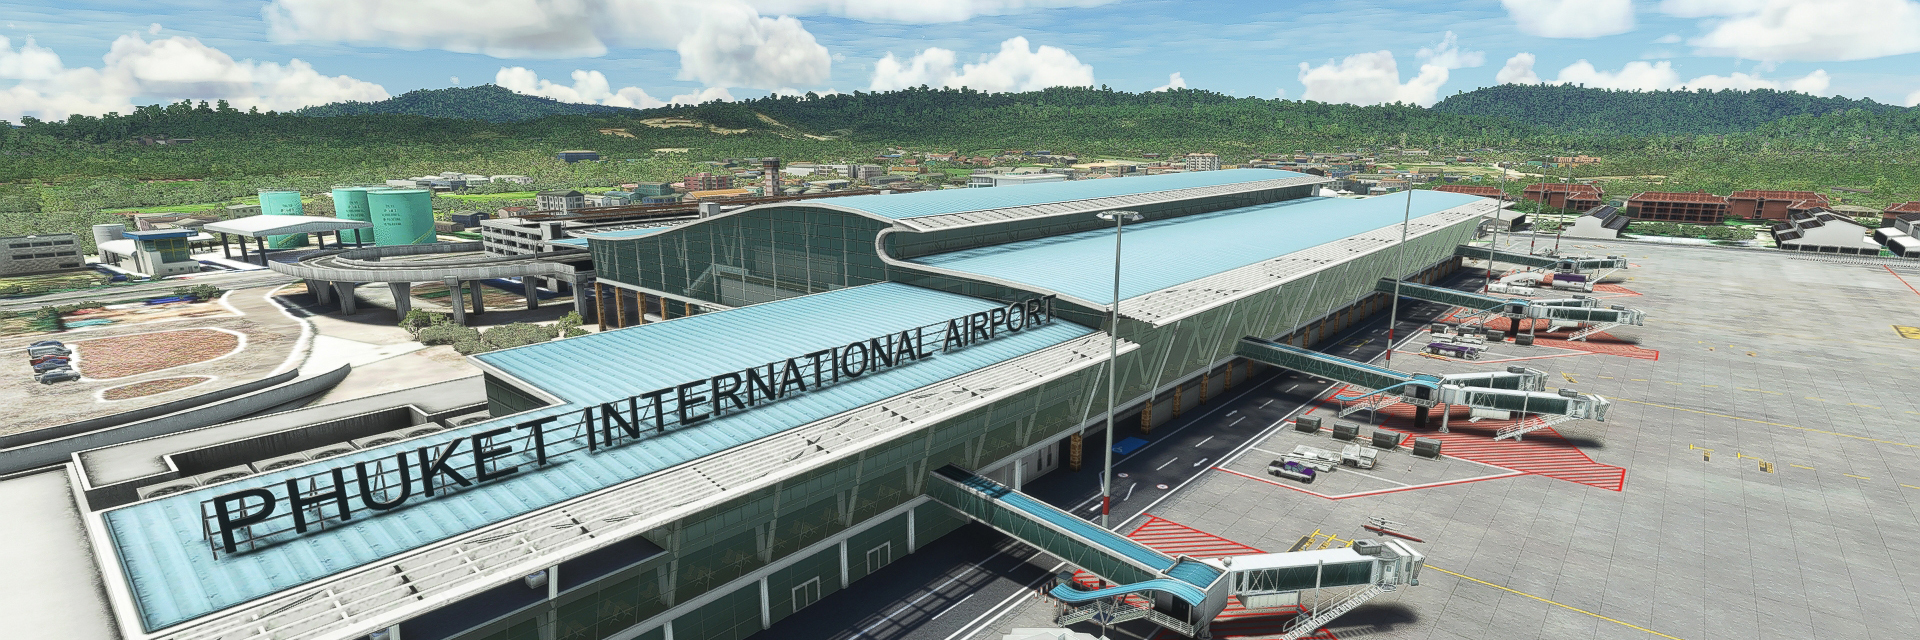 payware-vtsp-phuket-international-airport-msfs